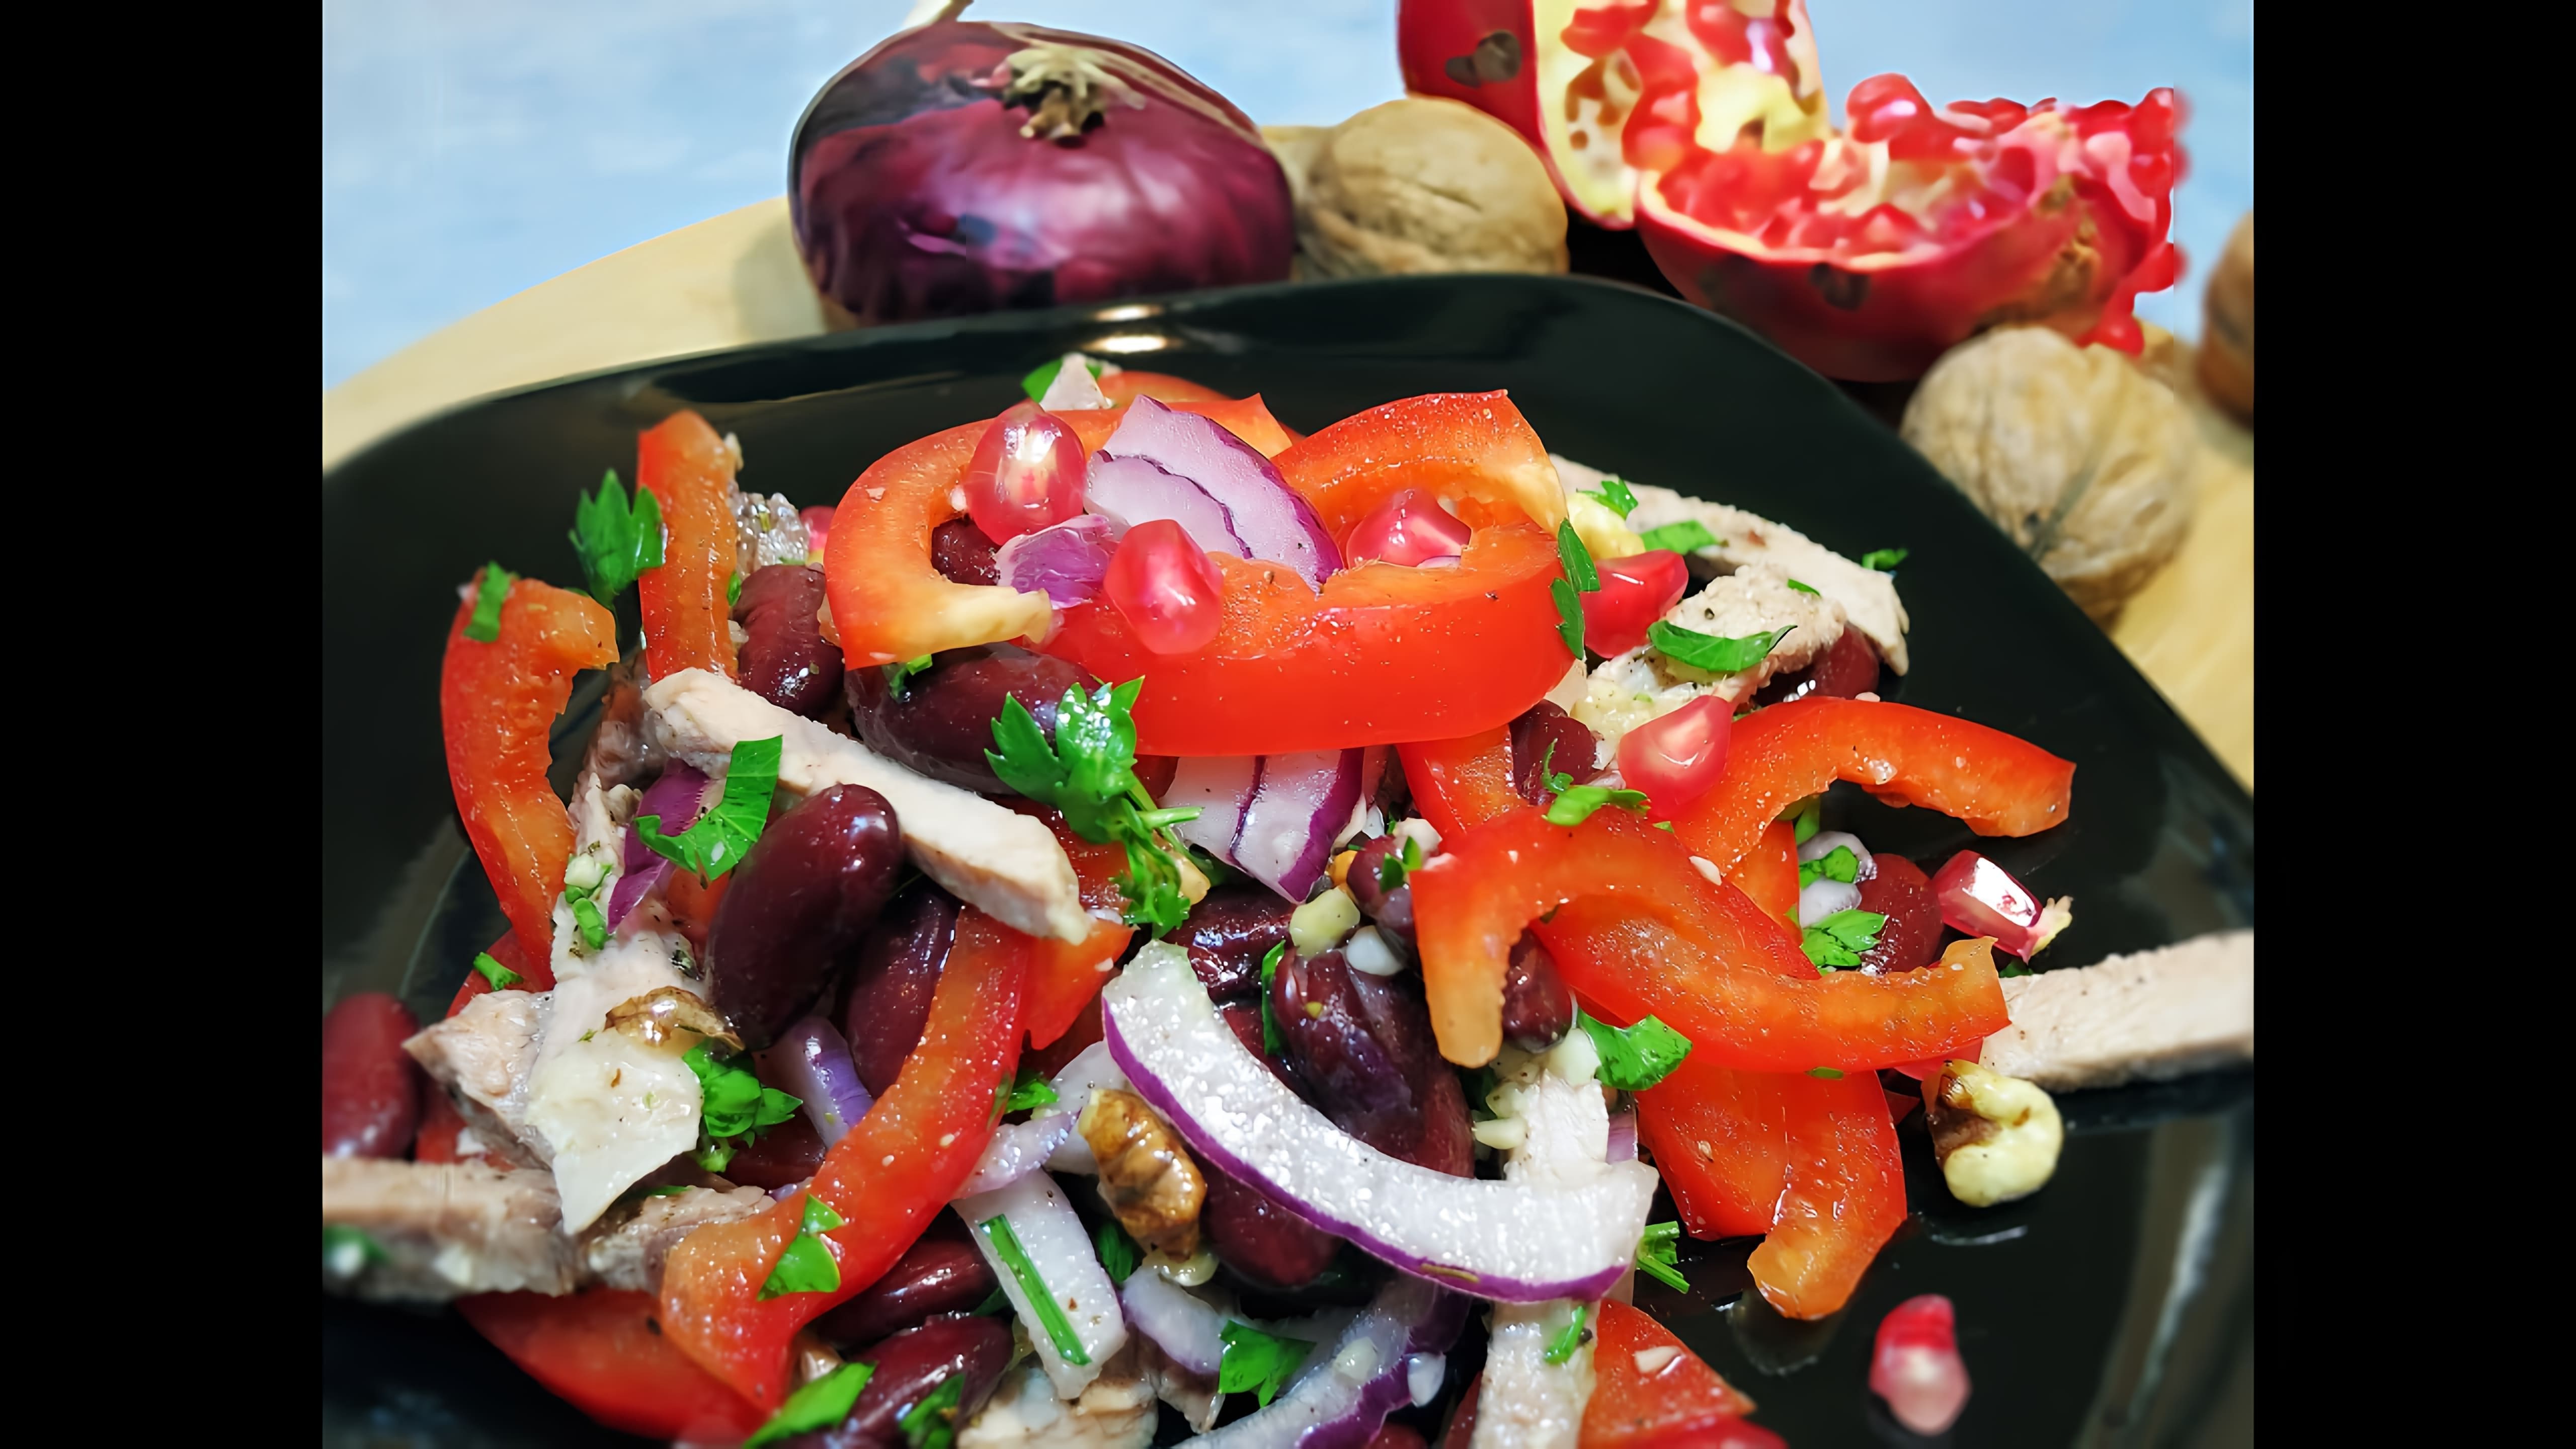 Салат Тбилиси с красной фасолью и мясом - это вкусное и сытное блюдо, которое можно приготовить в домашних условиях